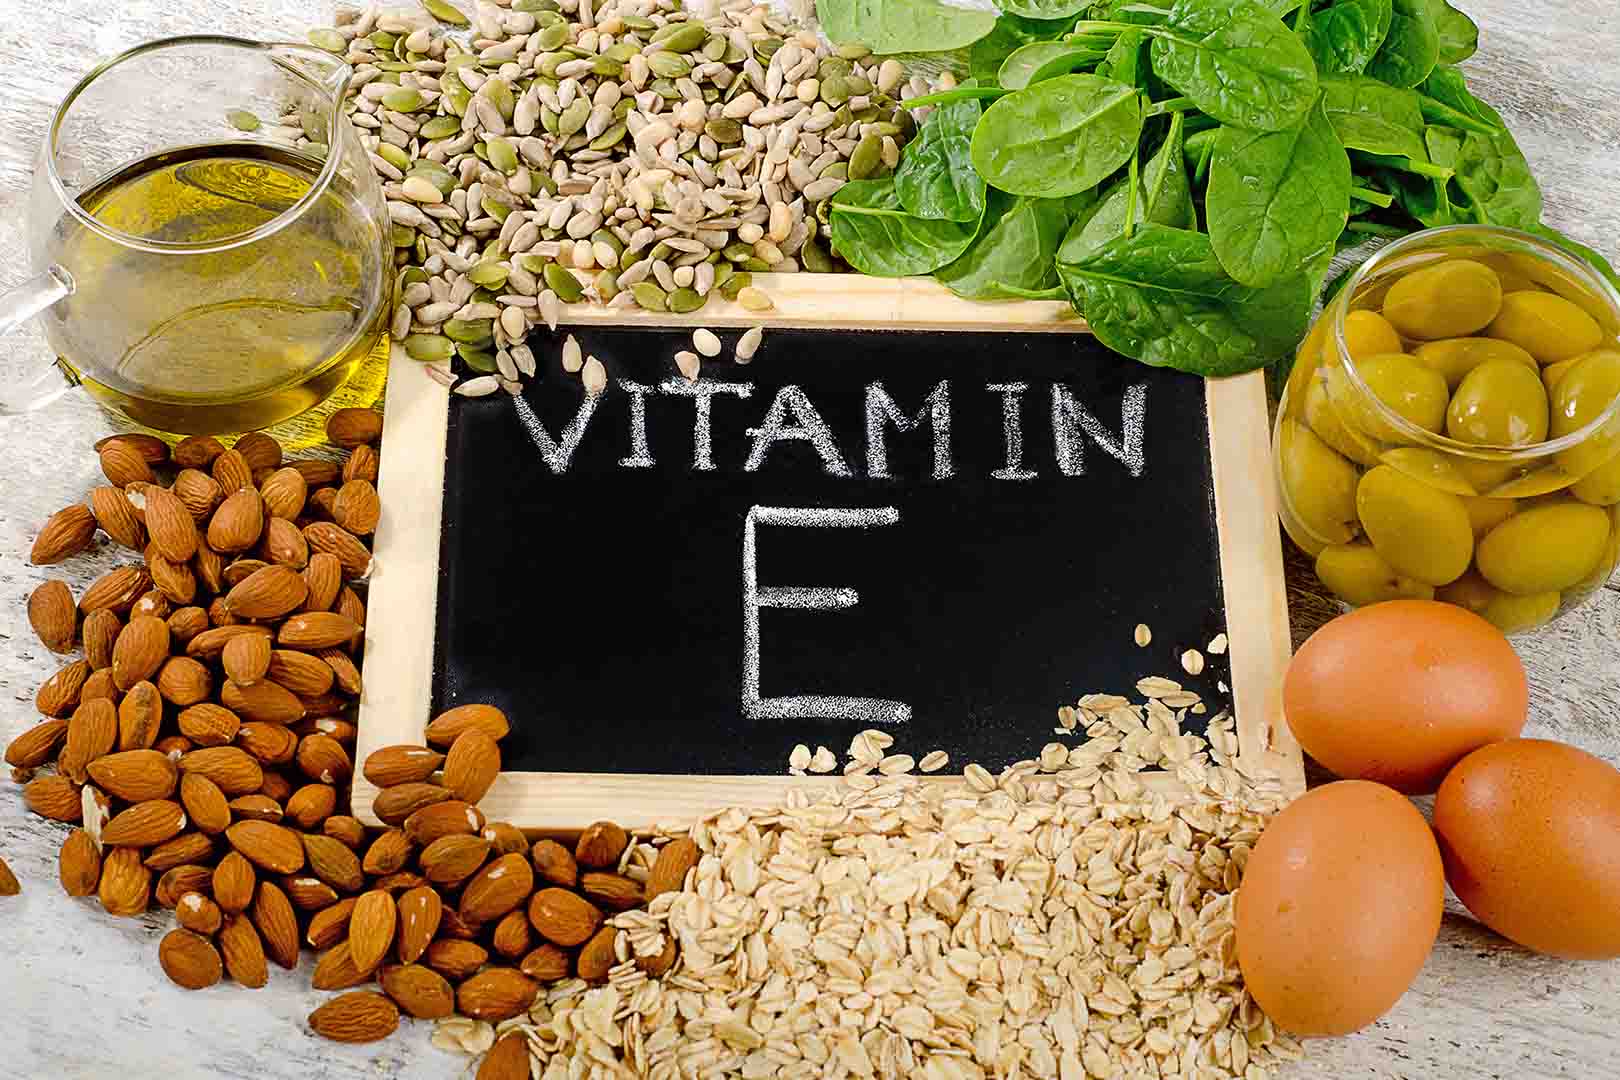 Defisiensi vitamin a dapat menyebabkan